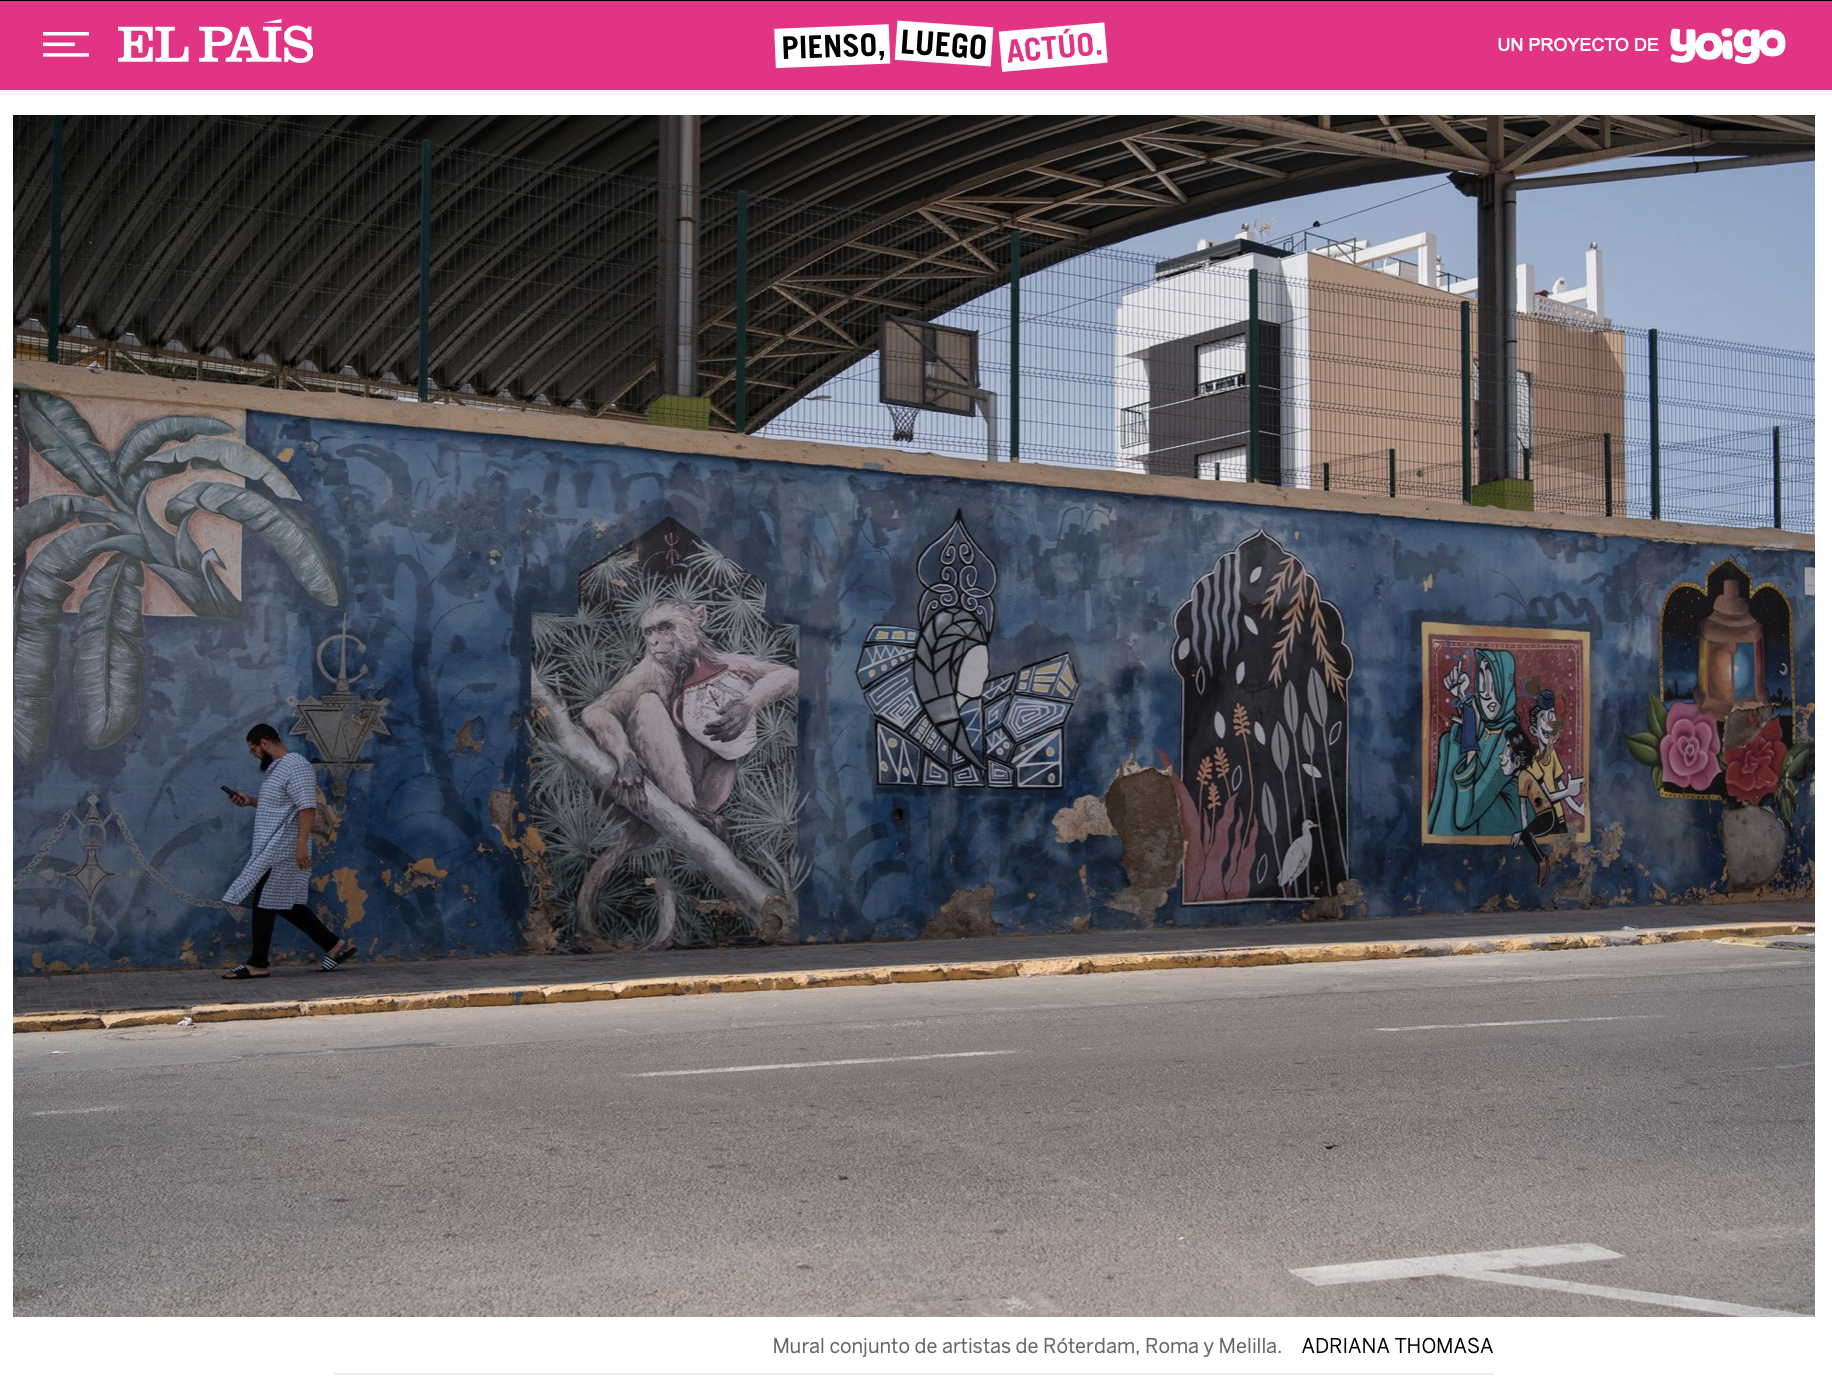 El País: El antropólogo que reduce las distancias sociales en Melilla sin derribar un solo muro